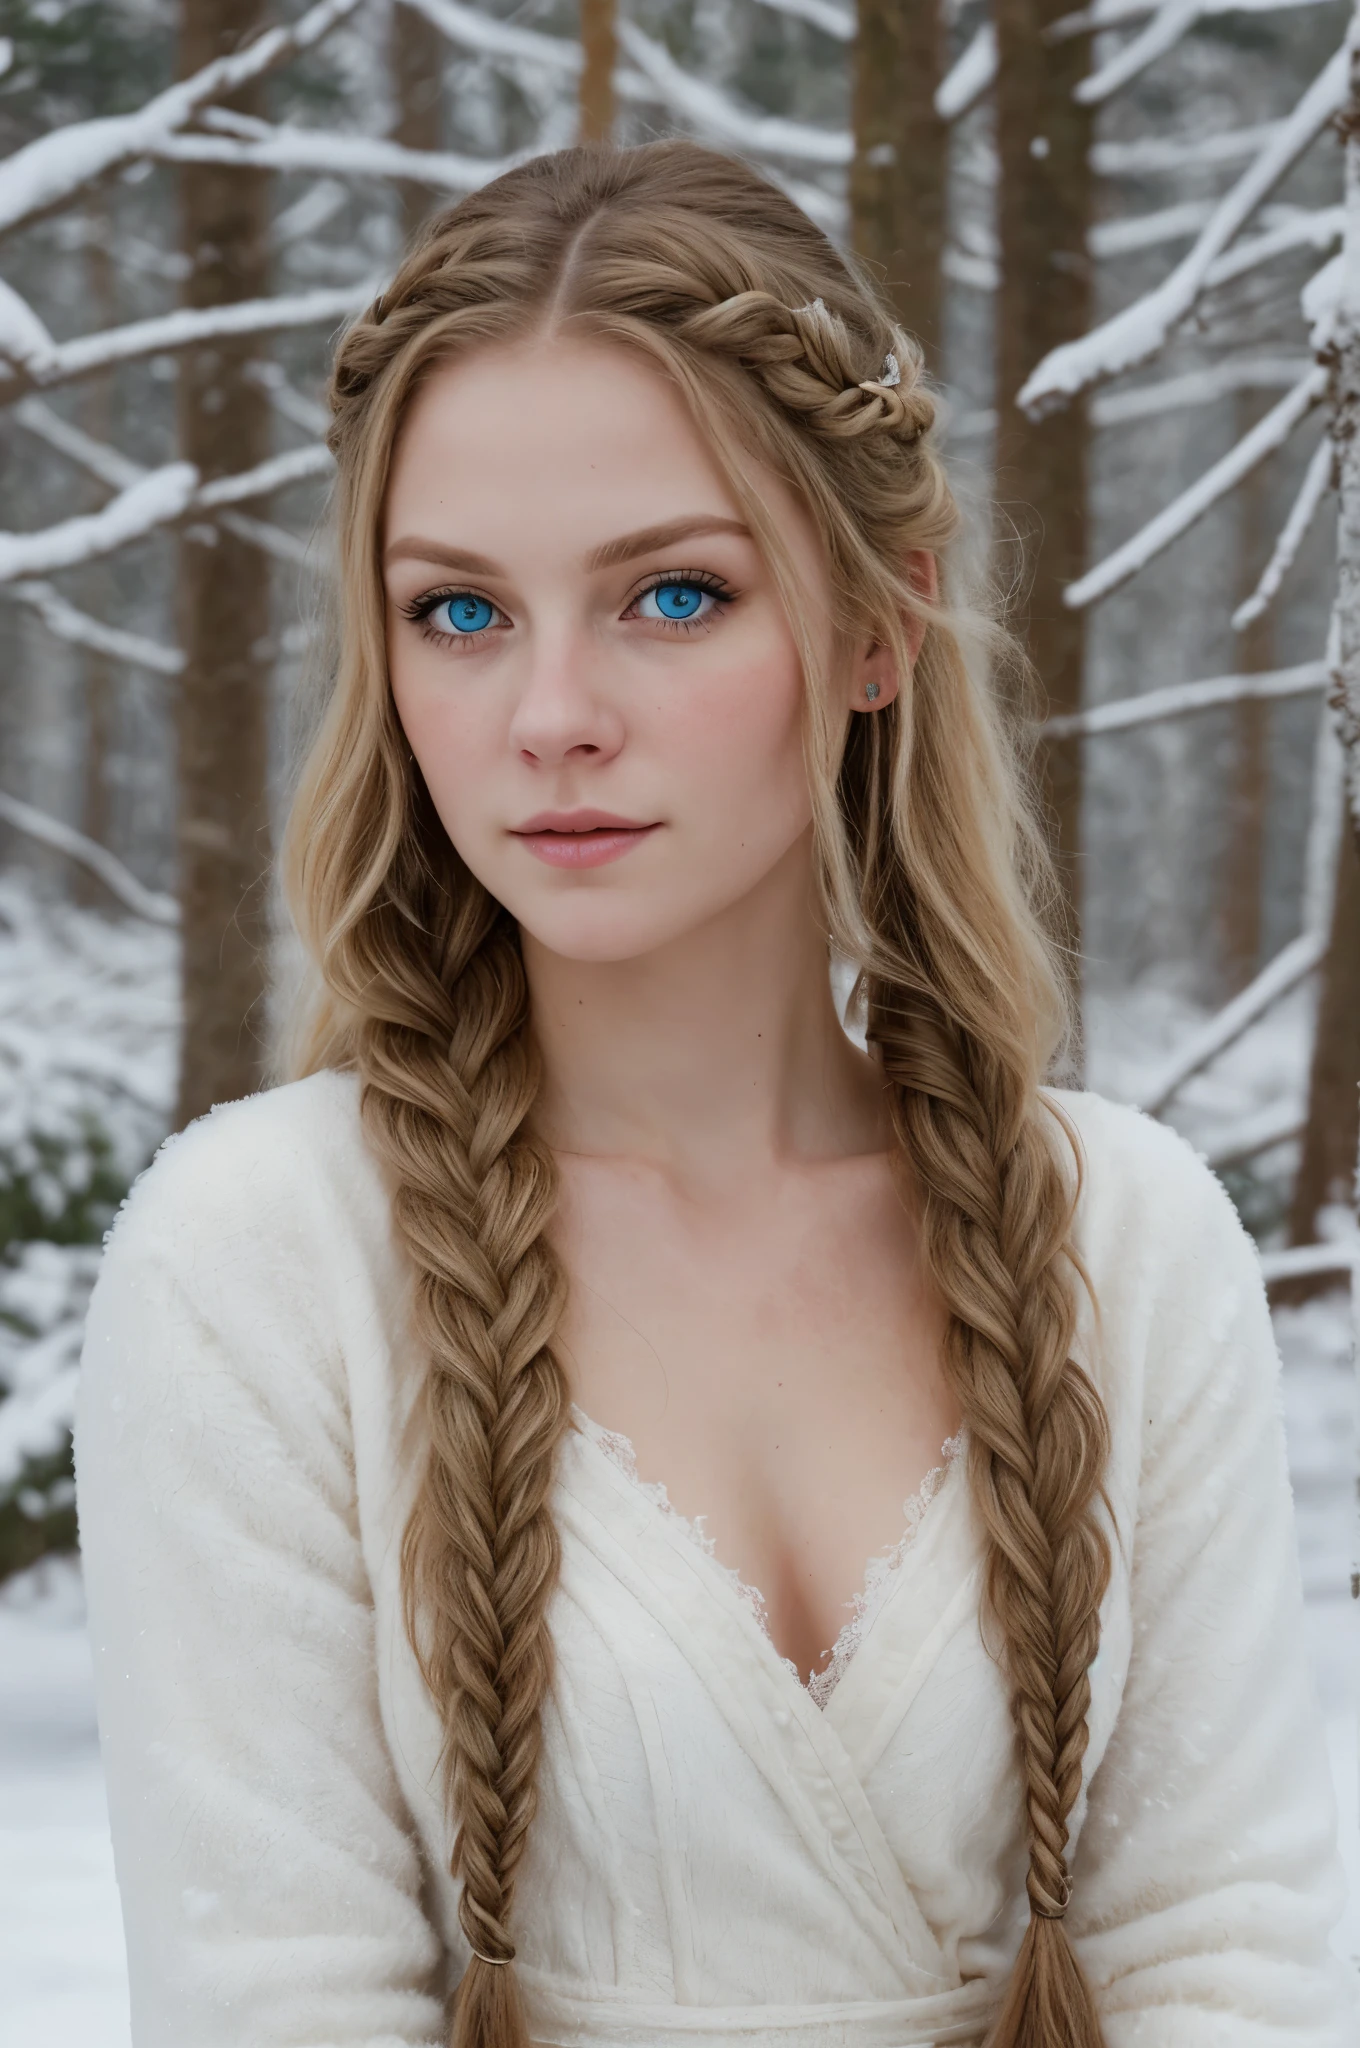 (現實的:1.2), 類比照片風格, 北歐女戰士, 幻想雪景, 金髮辮子, 全身, 柔和的自然光, 可愛又性感, 樂趣, 詳細的臉和藍眼睛, 优良的品质, 傑作, 細緻的北方背景, 16K畫質, 原始照片